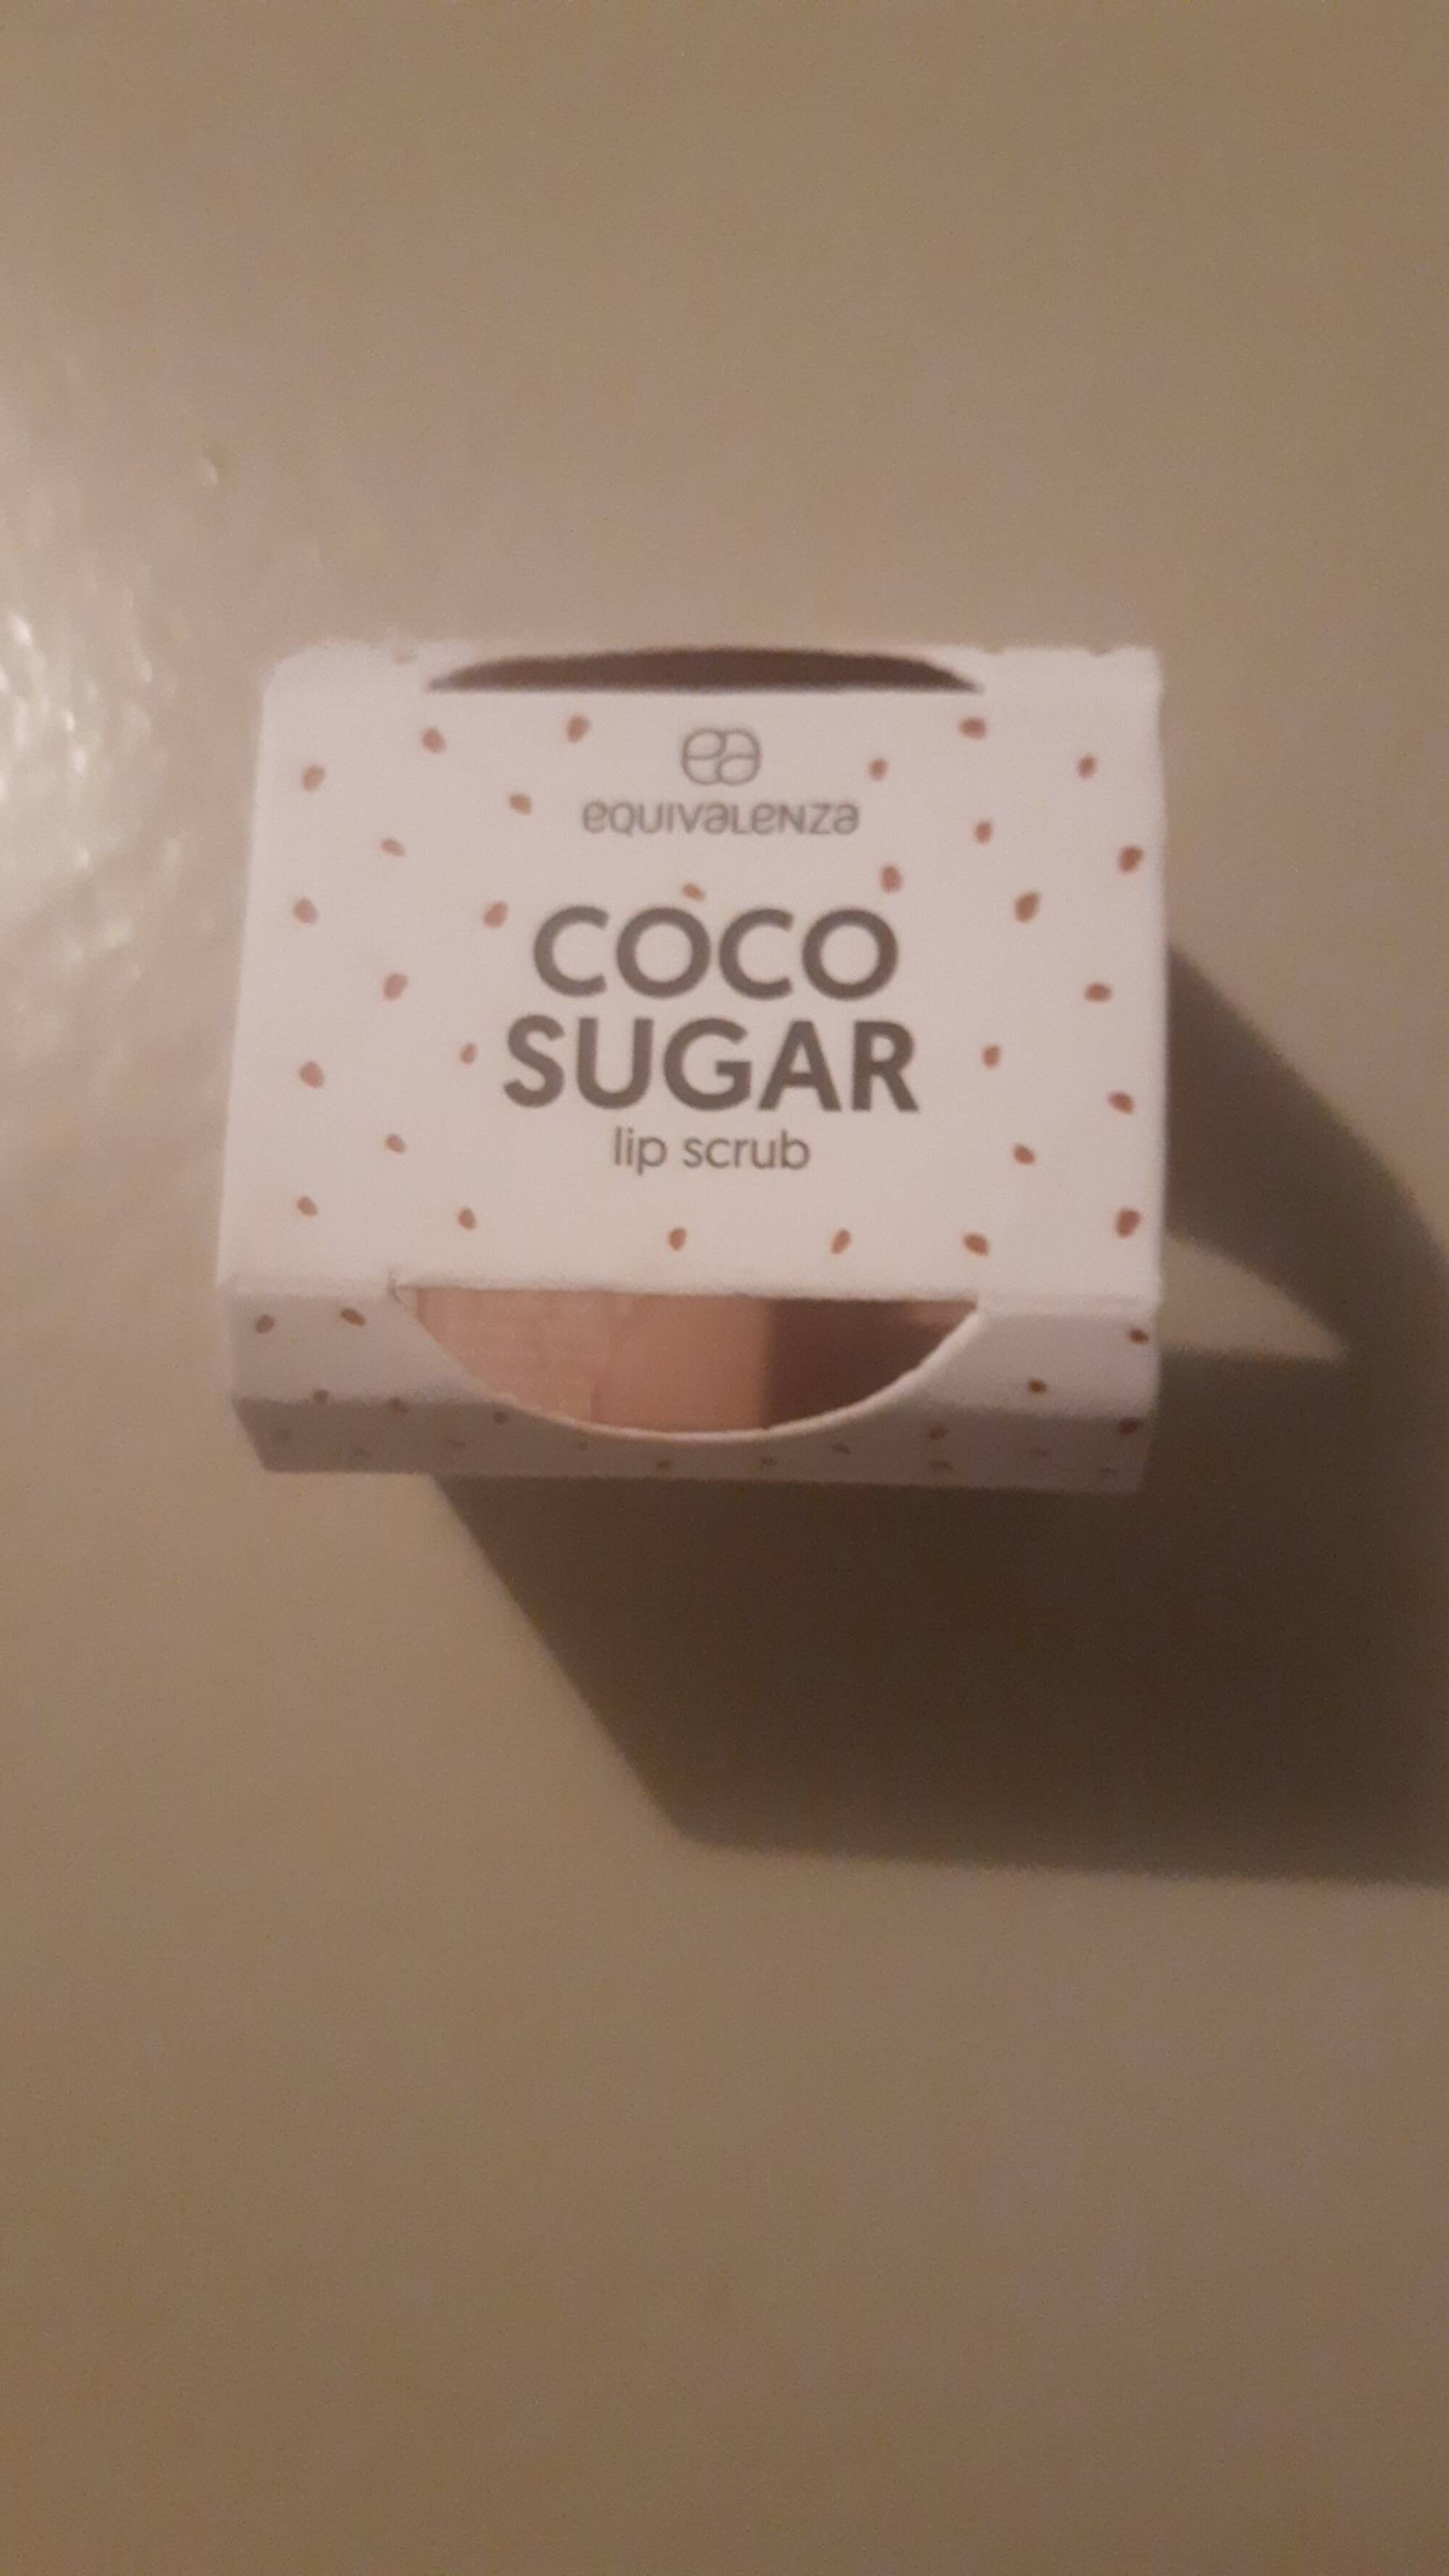 EQUIVALENZA - Coco sugar - Lip scurb